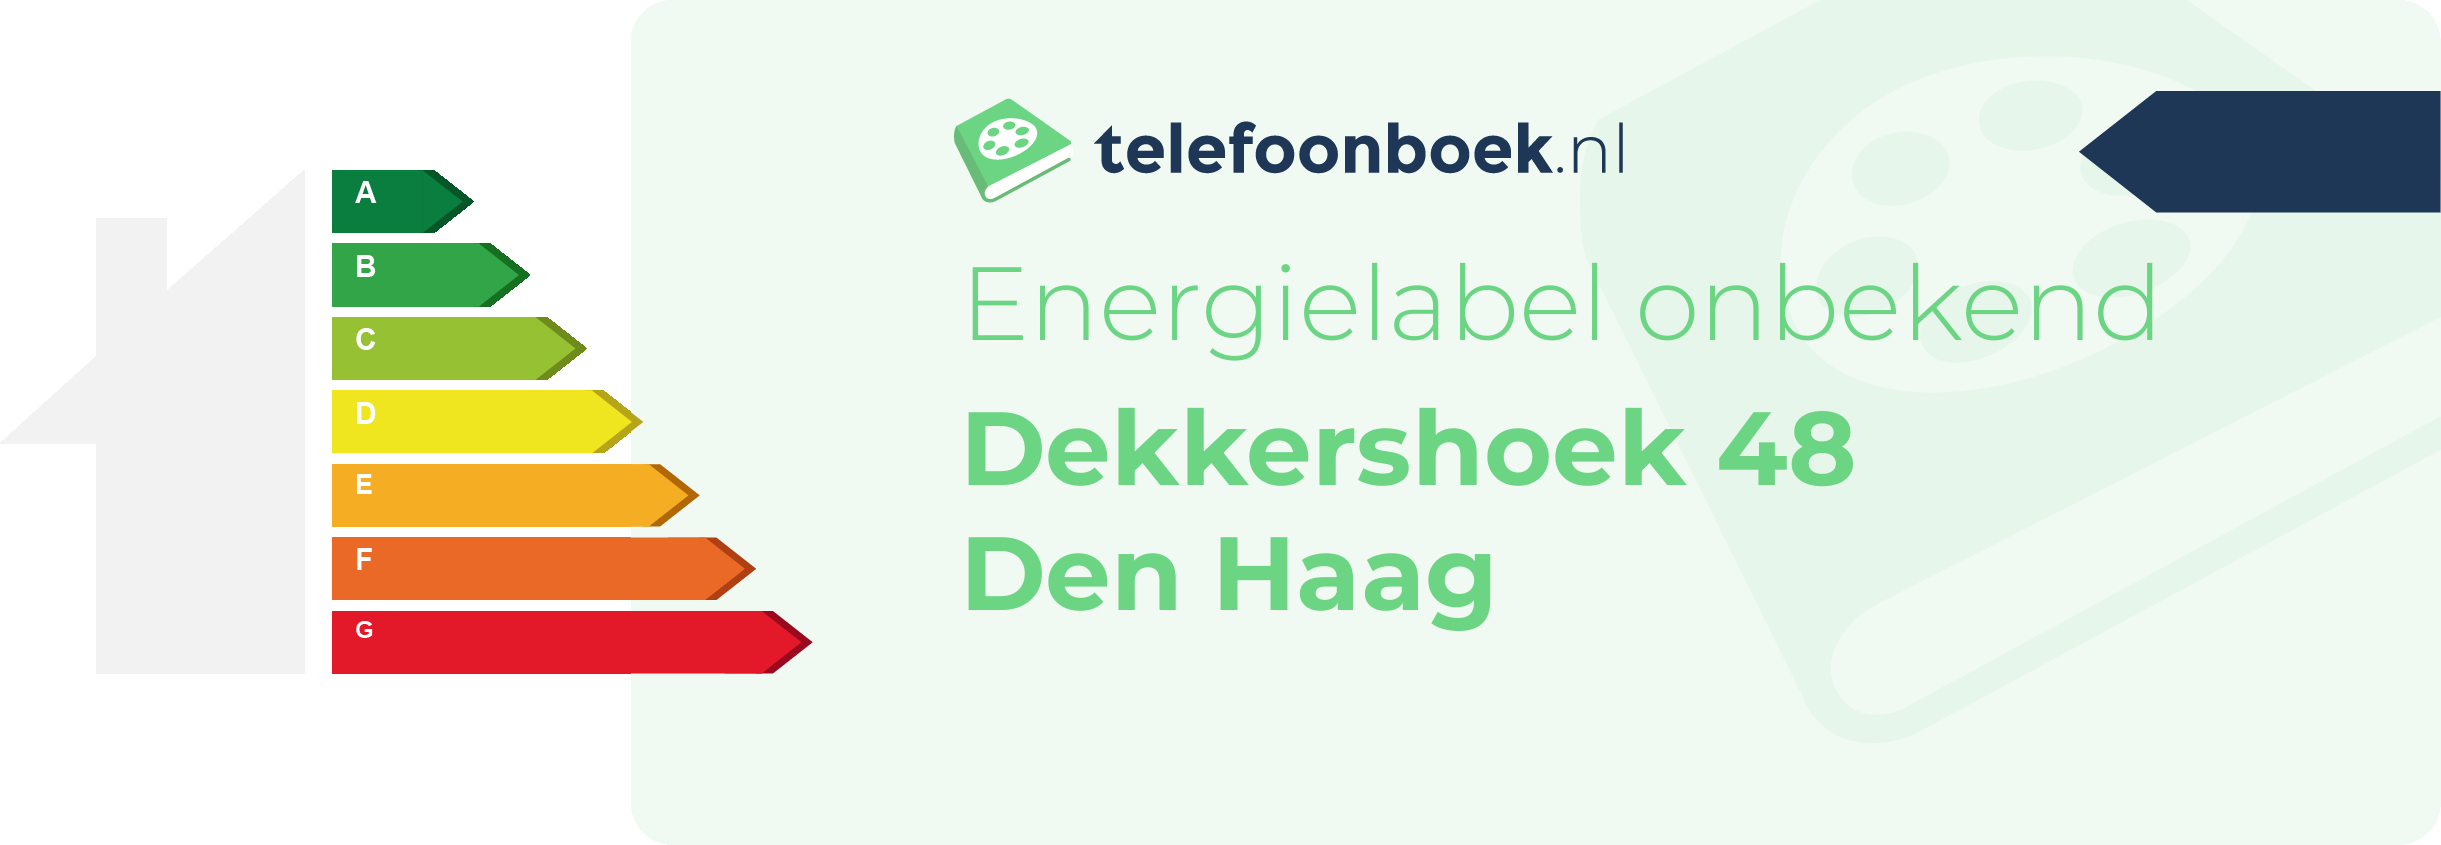 Energielabel Dekkershoek 48 Den Haag